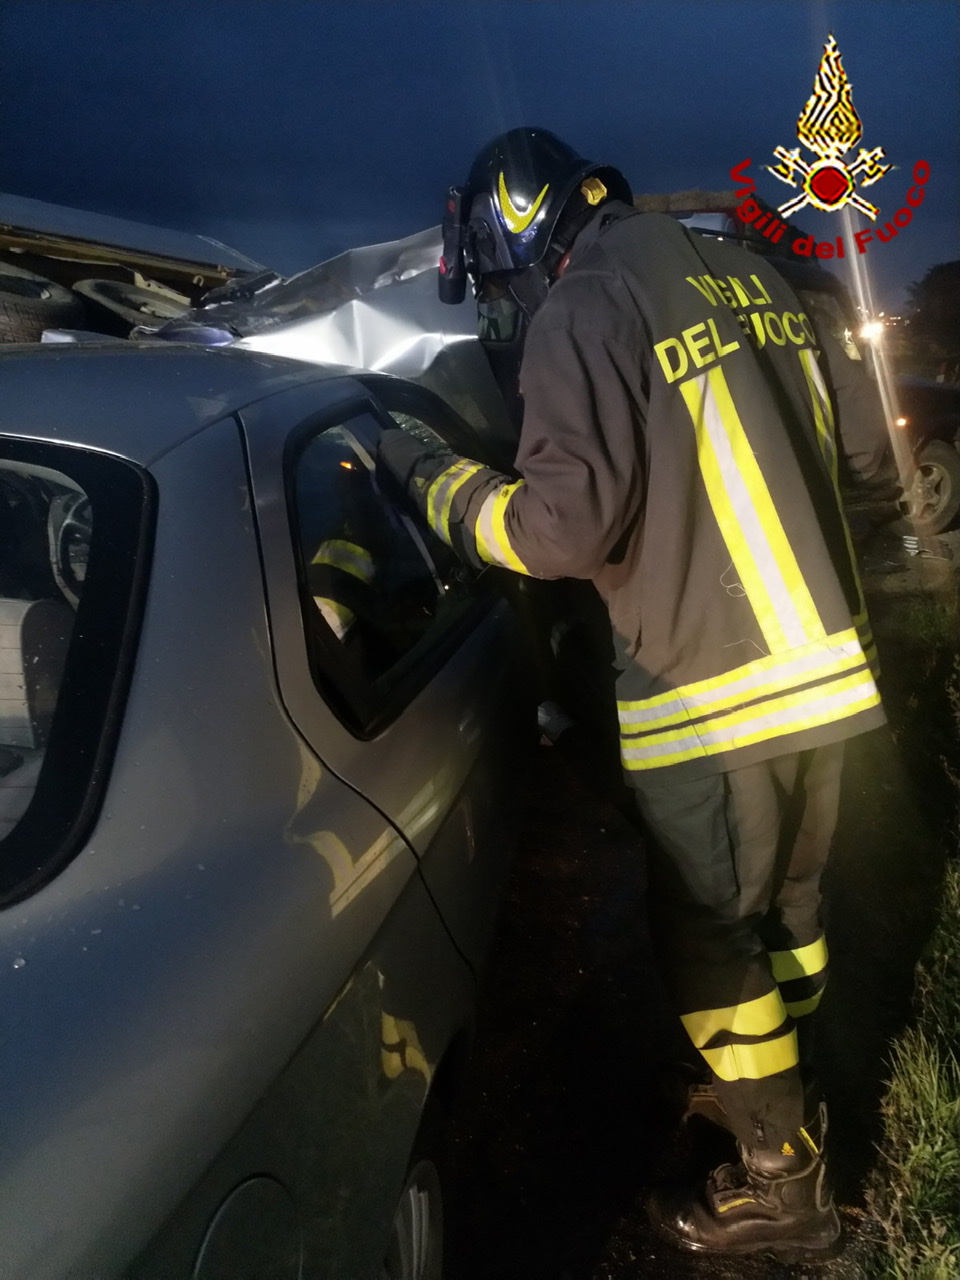 Una persona rimane incastrata all’interno dell’auto, soccorsa dai vigili del fuoco